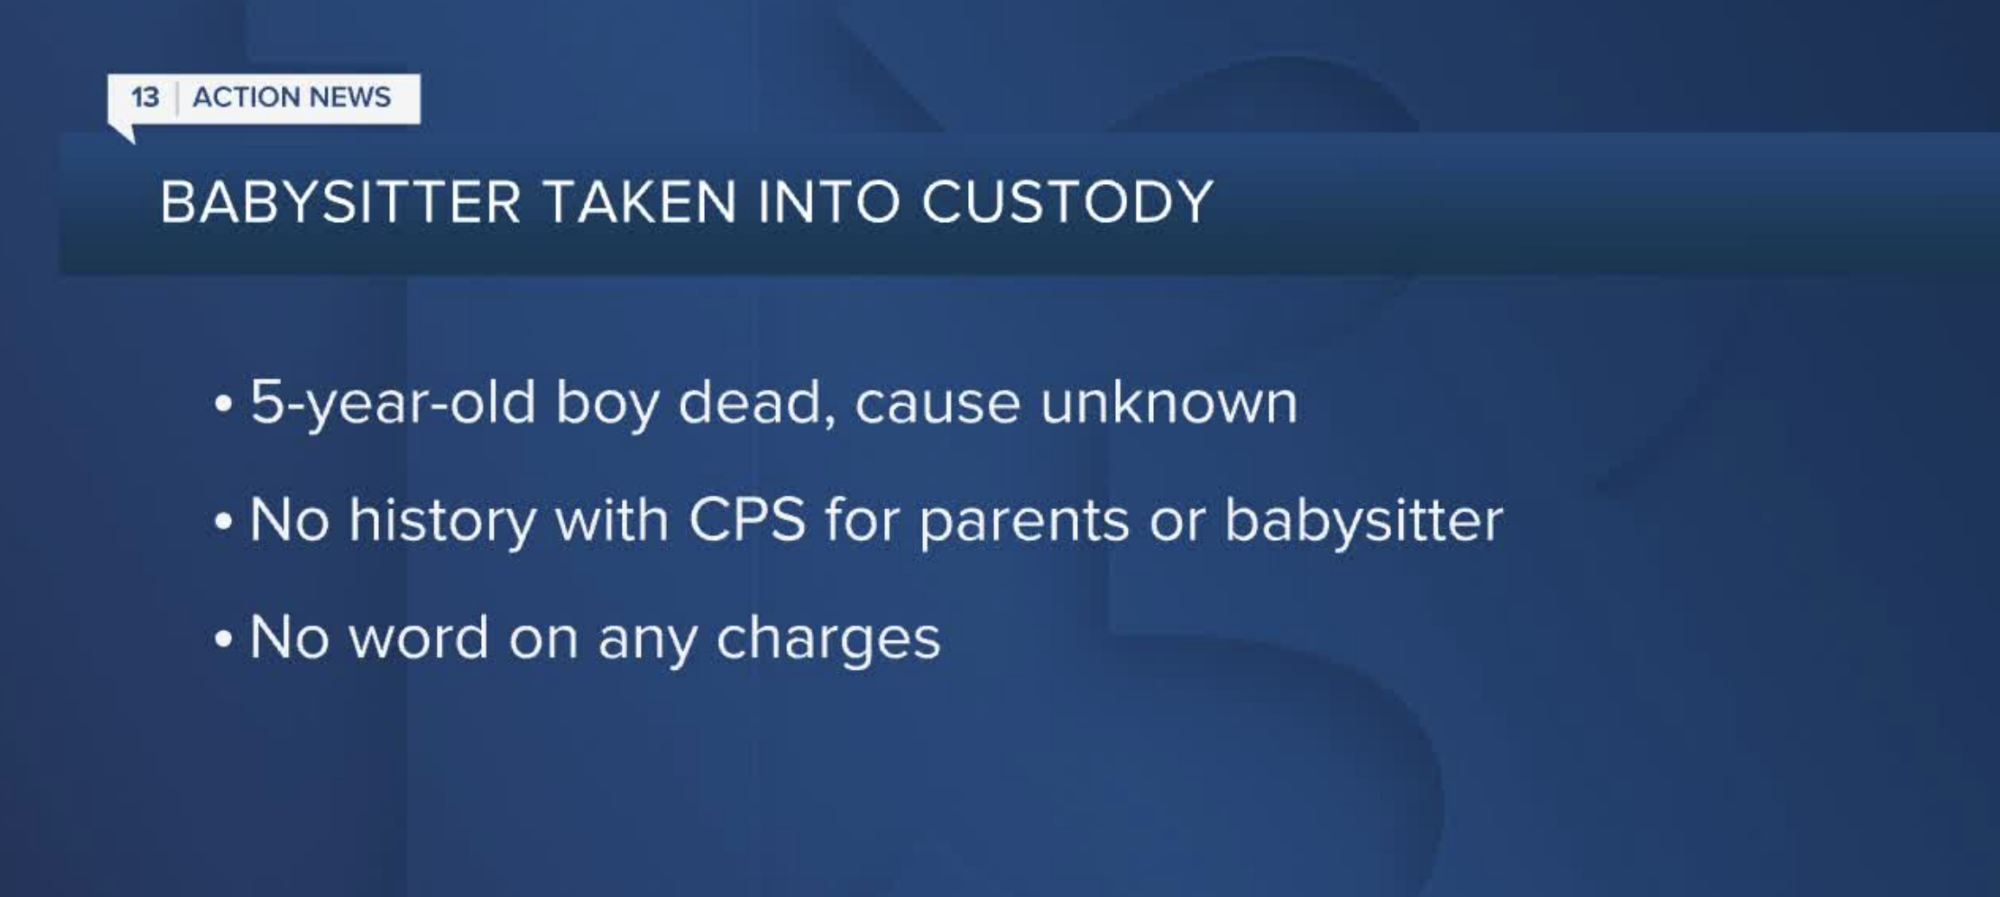 Babysitter taken into custody after child’s death